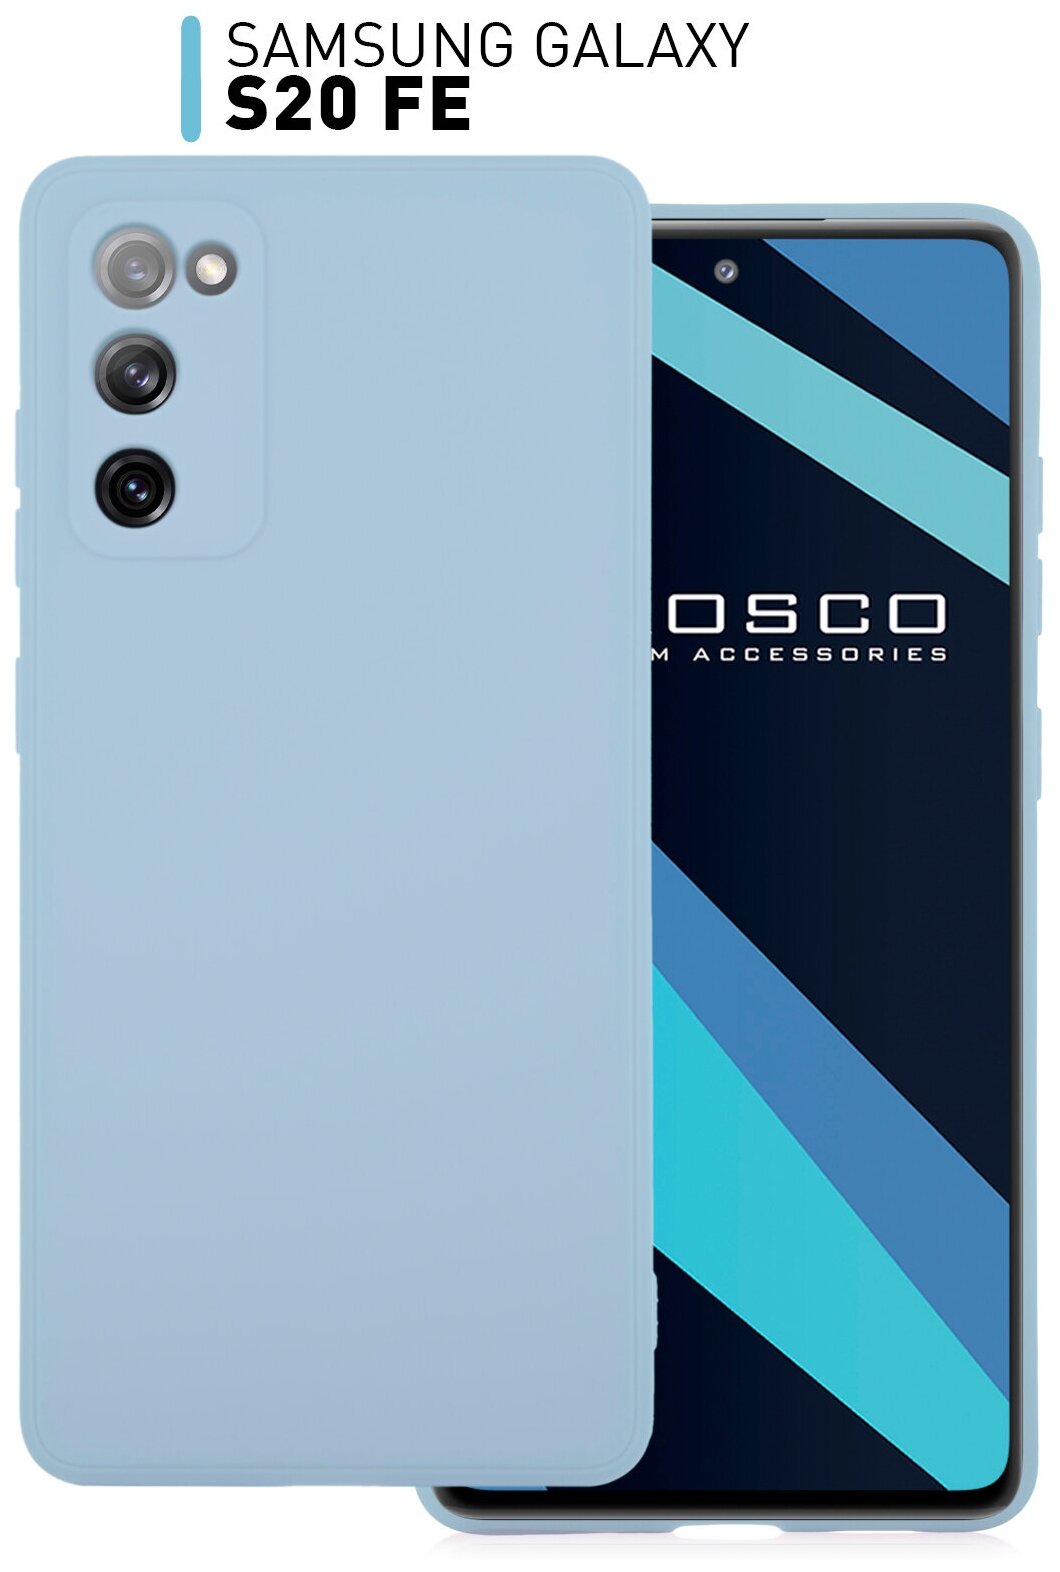 Чехол-накладка для Samsung Galaxy S20 FE (Самсунг Галакси С20 ФЕ, S20FE) тонкий из силикона, матовое покрытие, ROSCO защита камеры, светло-синий